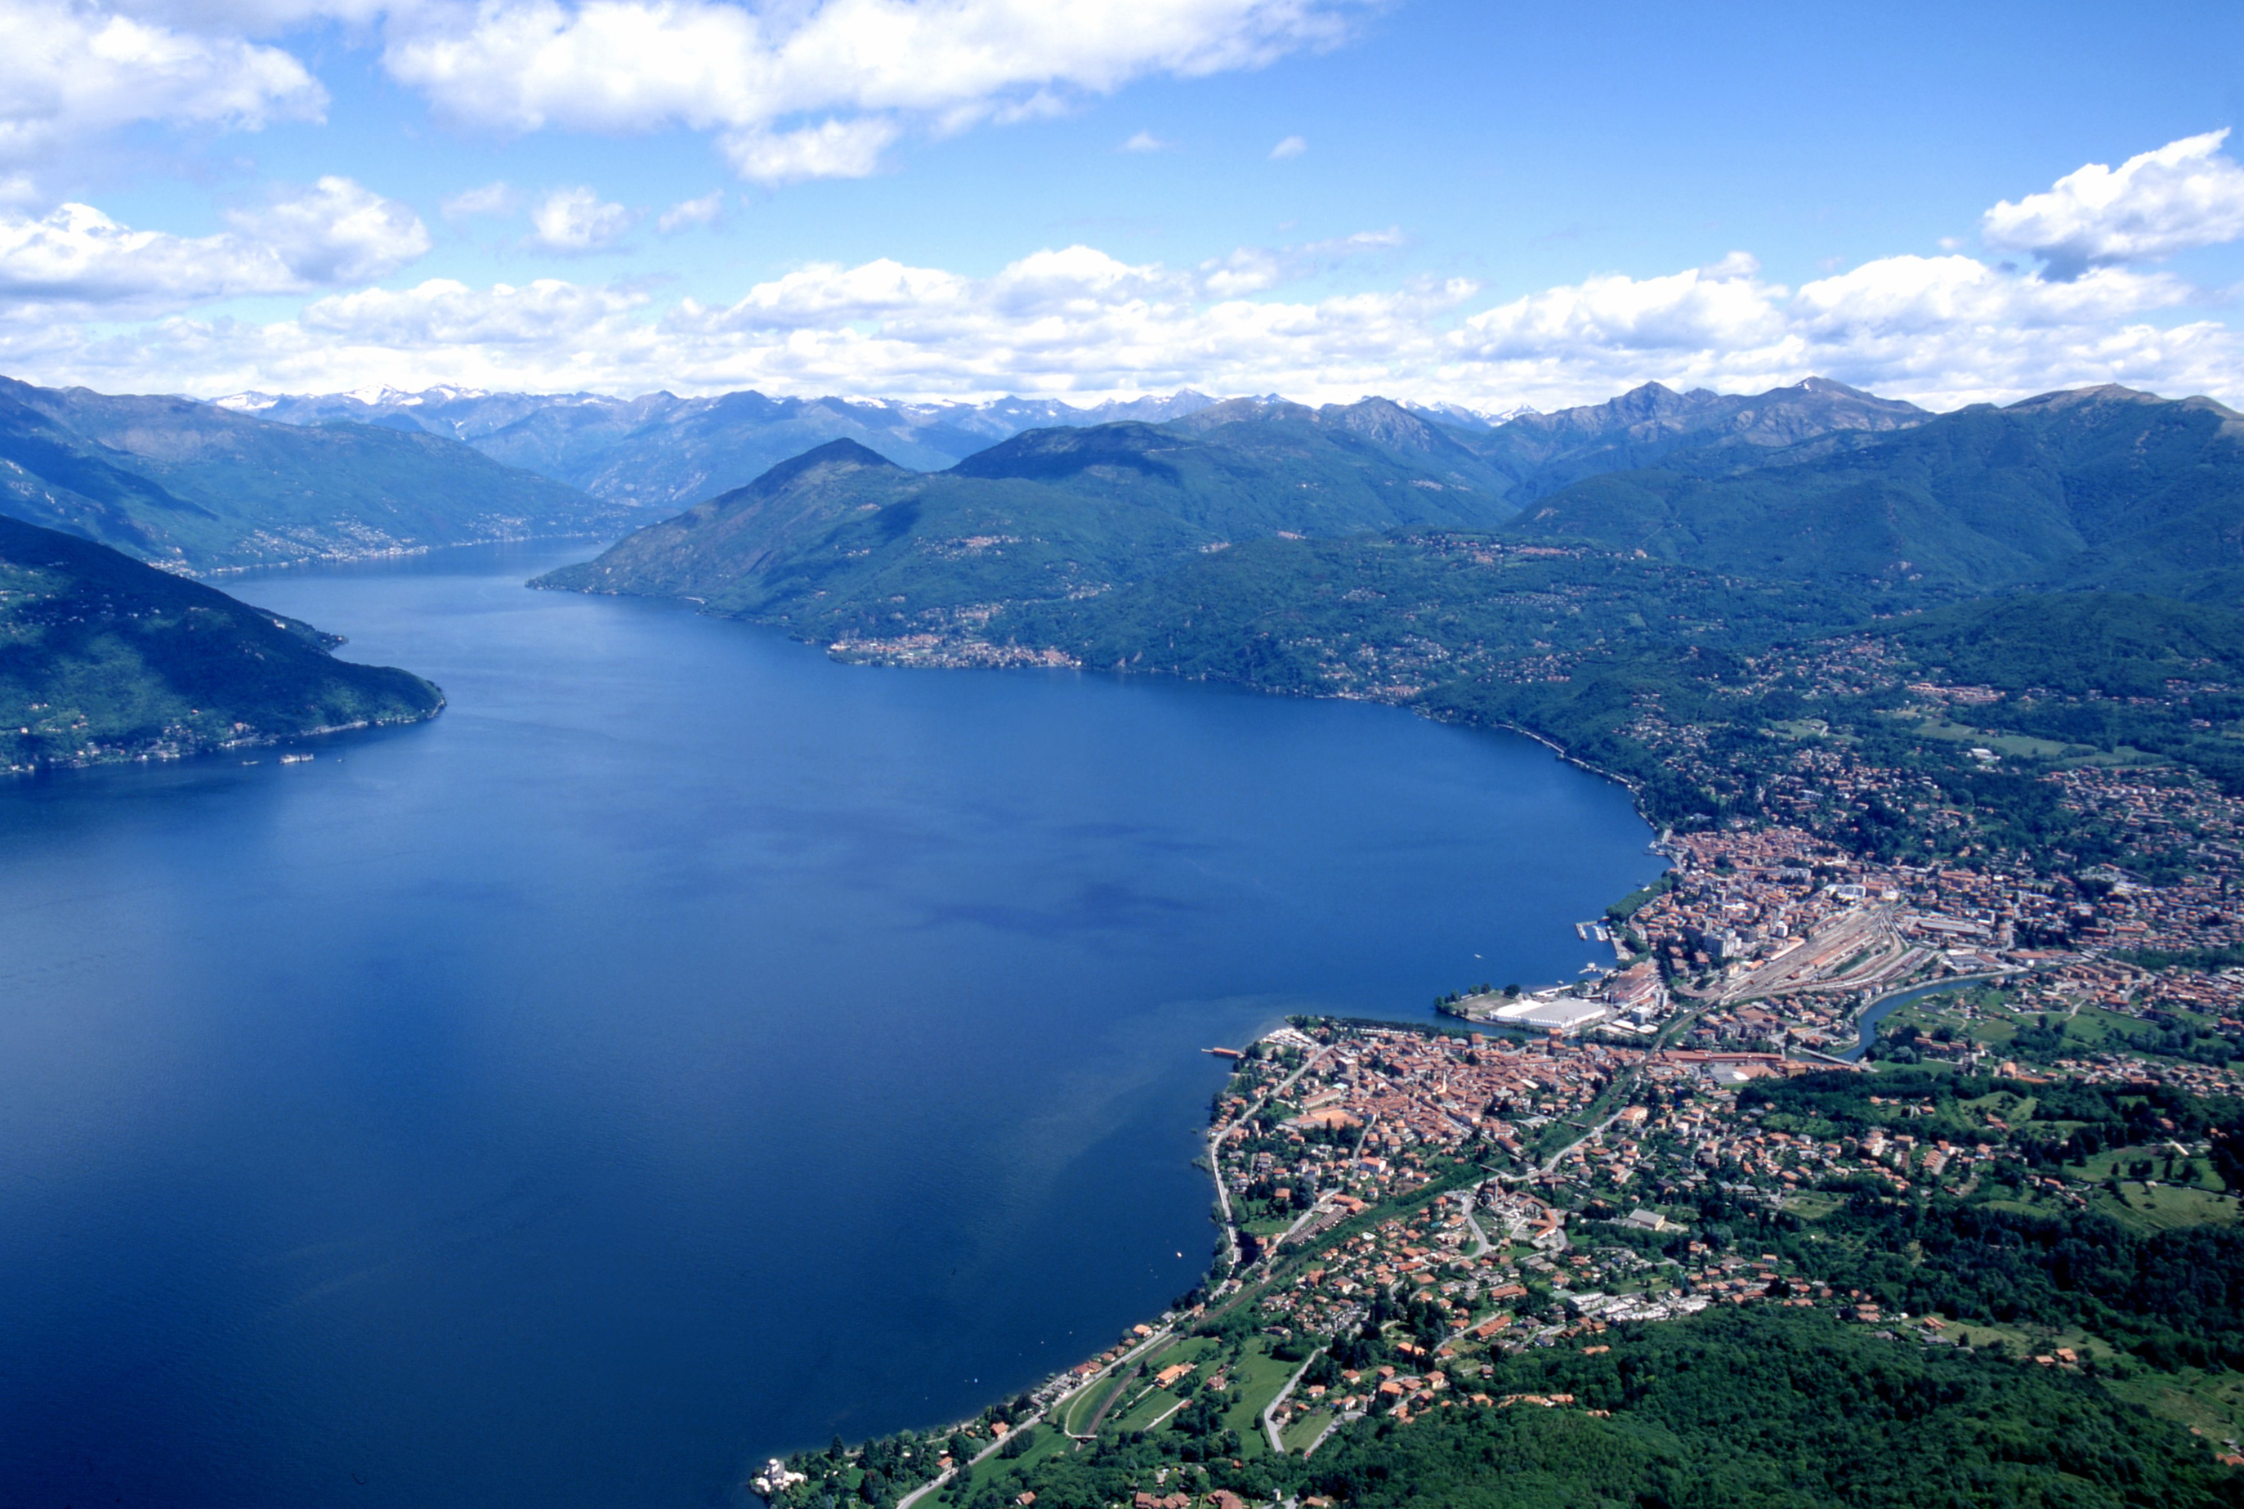 Luino, Lago Maggiore